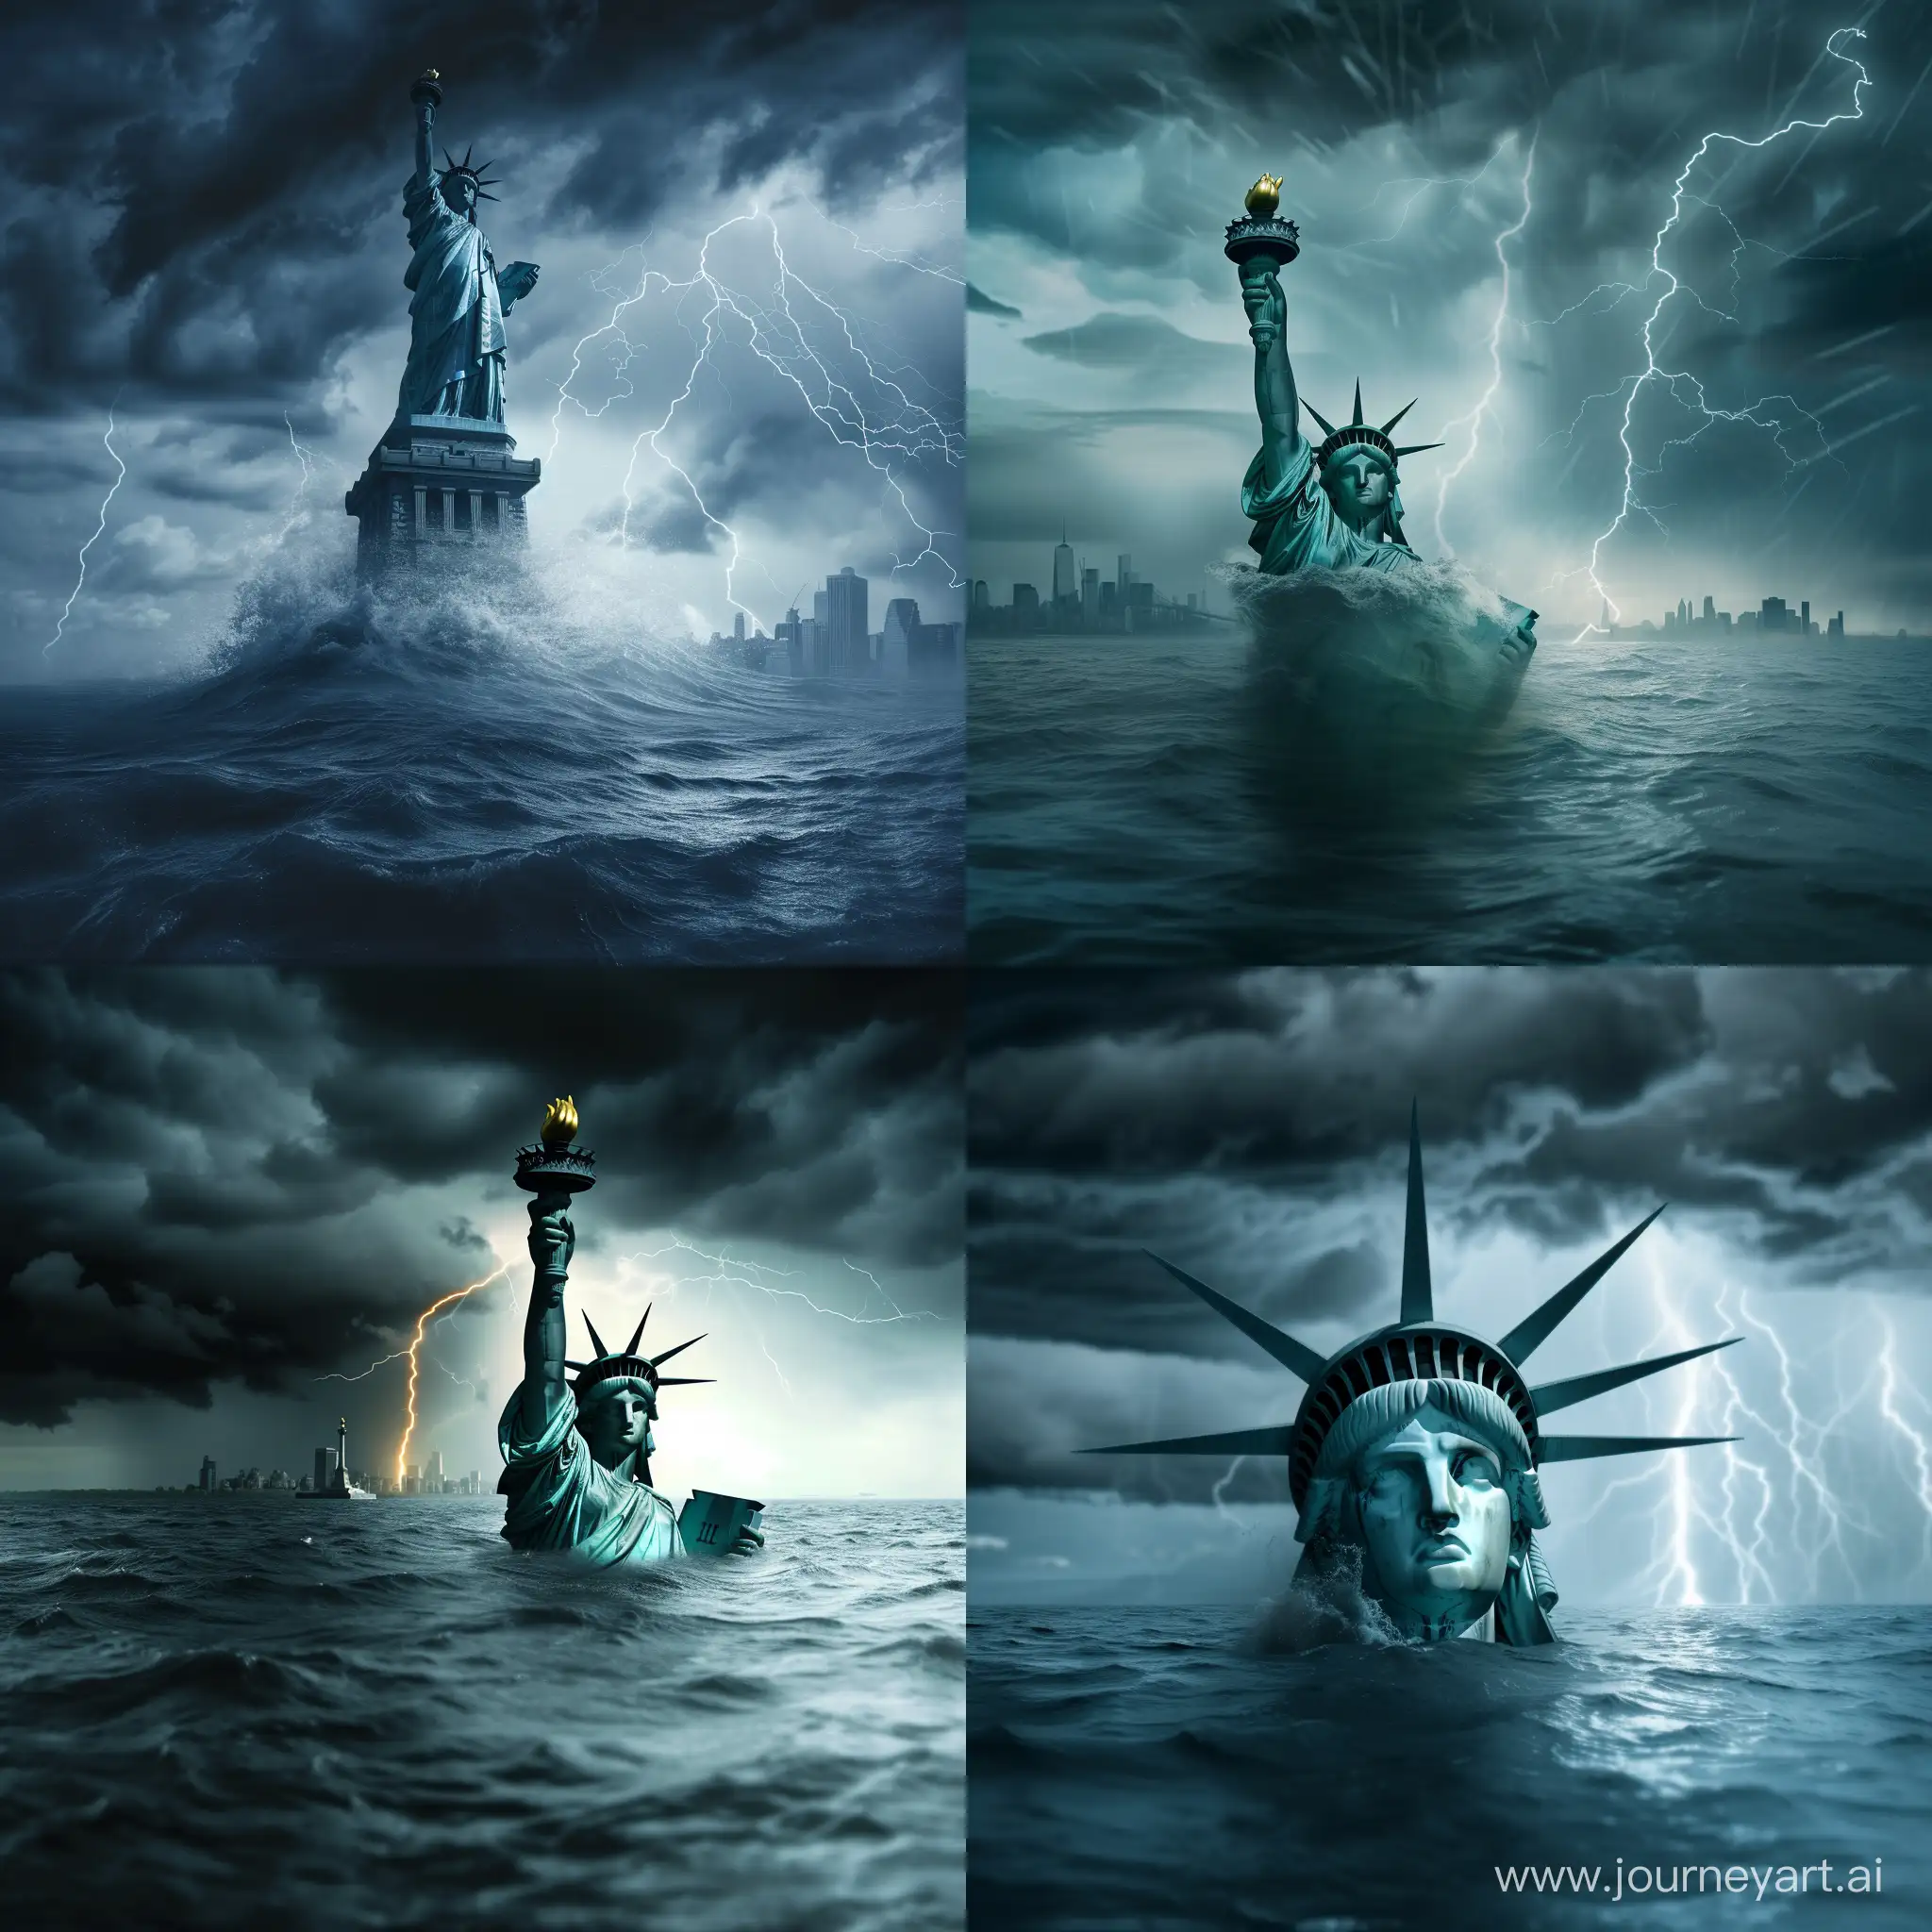 Америка уходит под воду, Статуя Свободы выглядывает из под воды наполовину, шторм, молнии